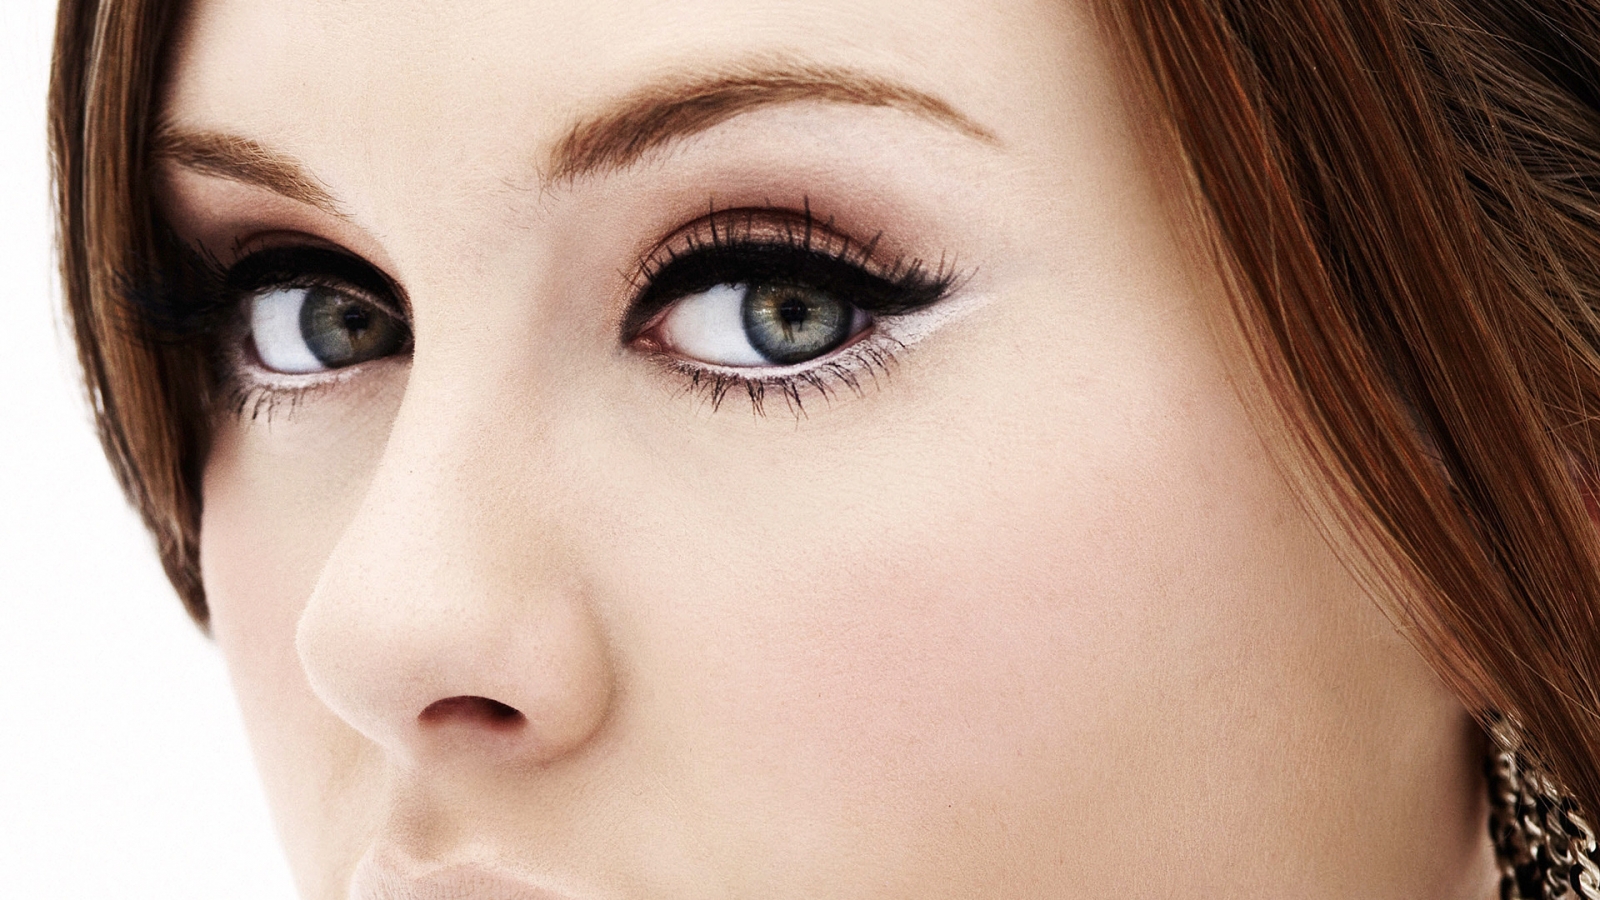 Adele Eyes for 1600 x 900 HDTV resolution